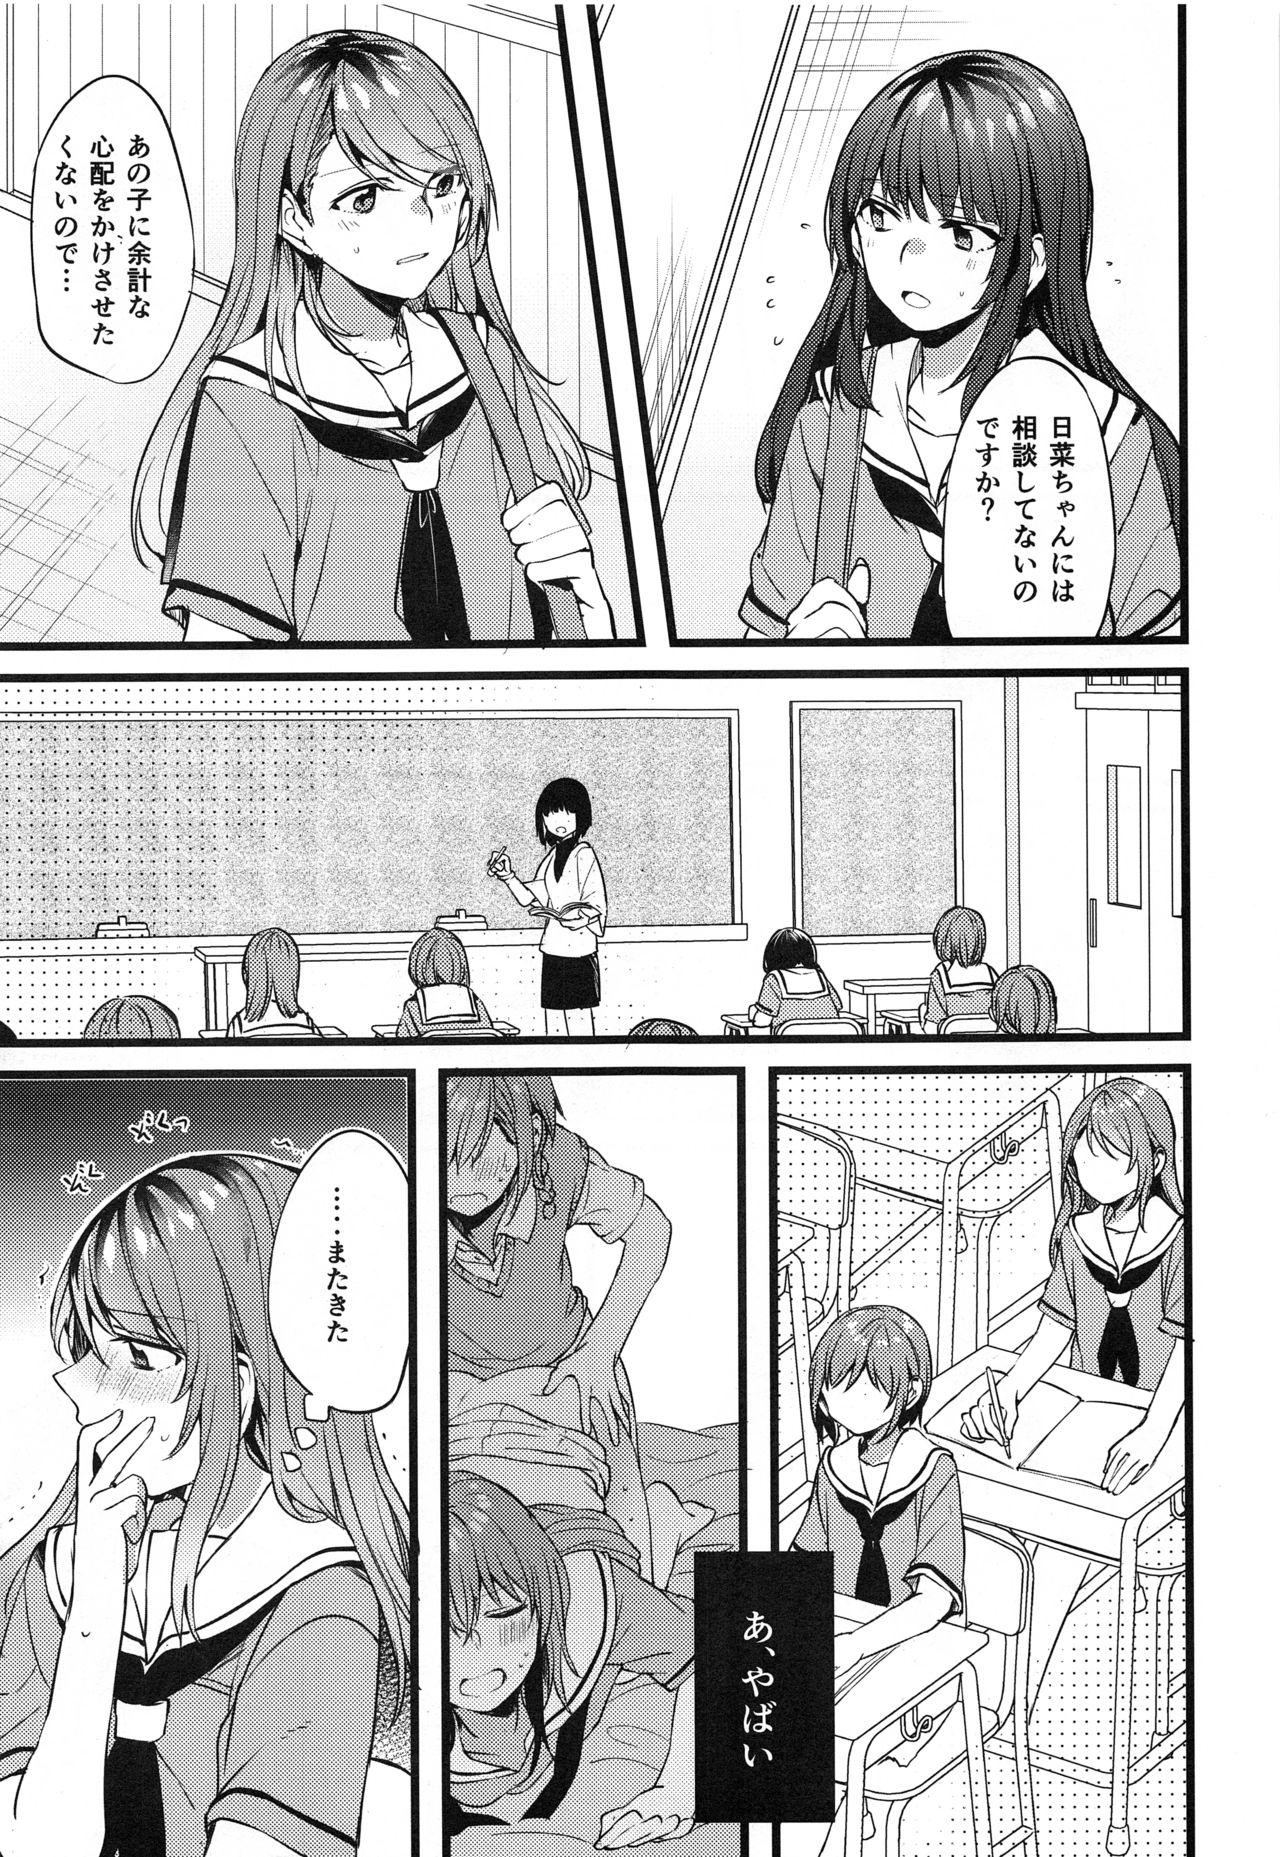 Sentando Kimi no Koi wa Watashi no Koi - Bang dream Panties - Page 8